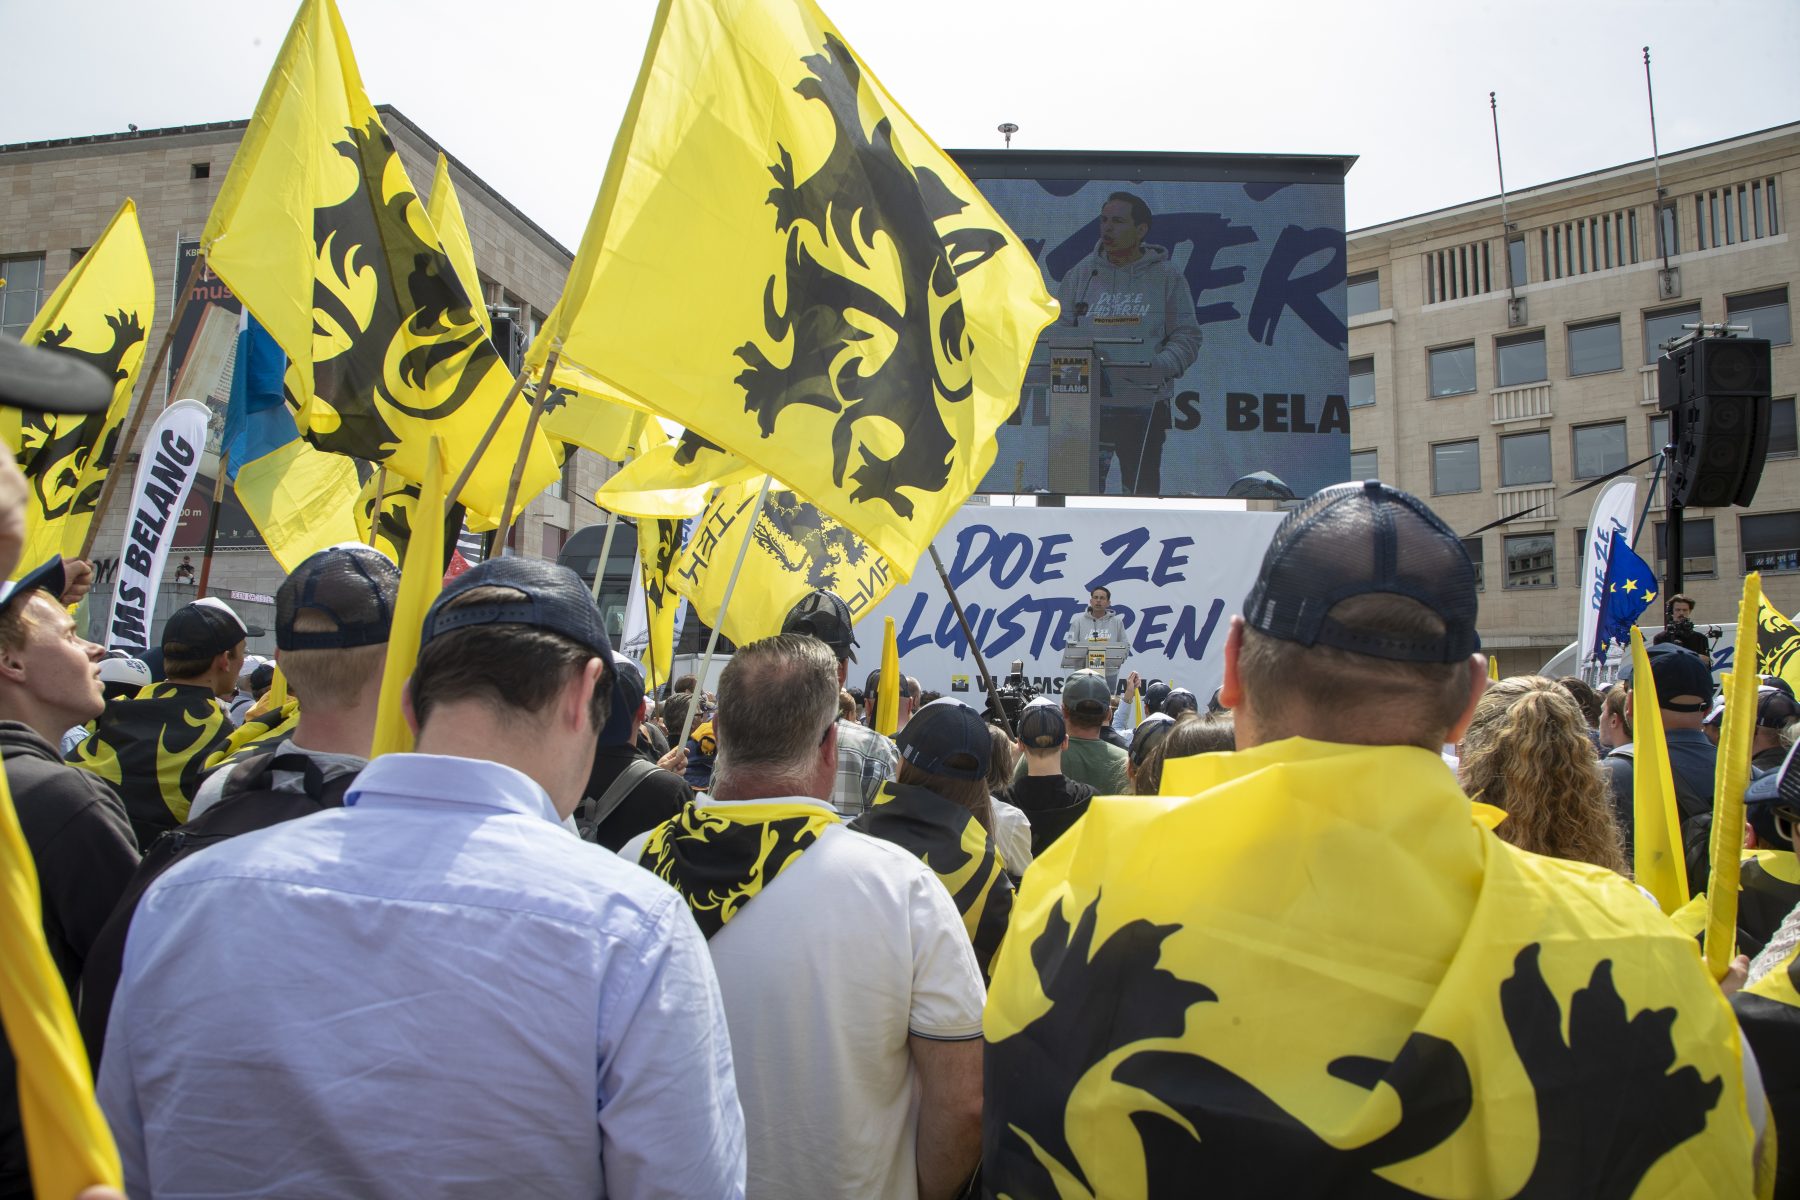 Traiter les électeurs du Vlaams Belang de « crapules », c’est stupide et dangereux